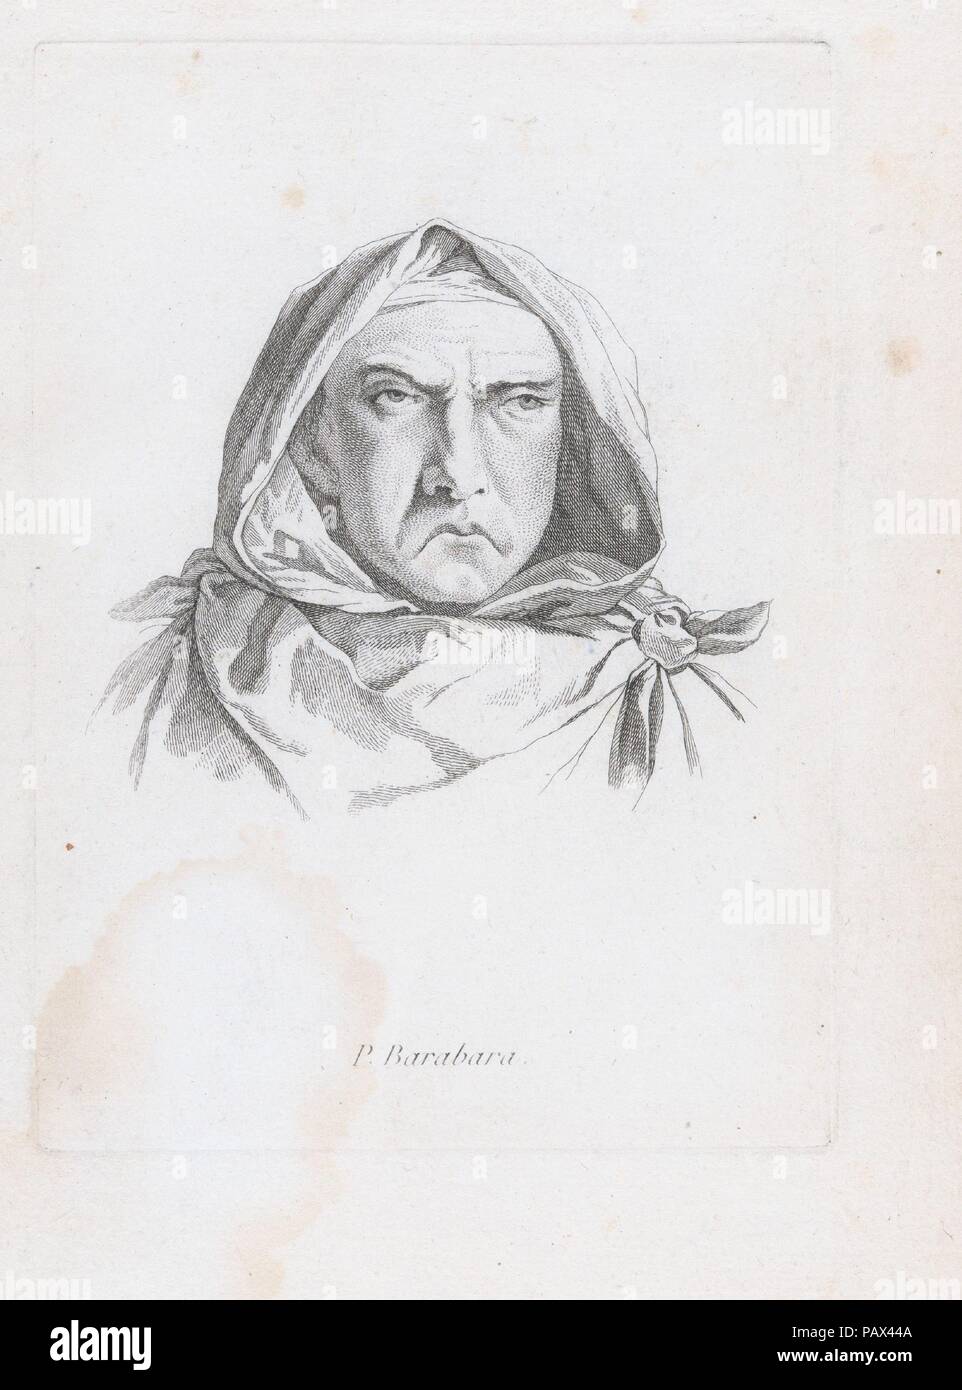 Portrait de P. Barabara. Artiste : Après Guillaume Thiemet (français, actif ca. 1781/88). Fiche Technique : Dimensions : 11 × 1/8 7 7/8 in. (28,3 × 20 cm) Plaque : 7 5/8 x 5 7/16 in. (19,3 × 13,8 cm). Date : seconde moitié du 18e siècle. Cette impression est lié dans un album composé de seize premières impressions et une impression ultérieure de la Live de Jully's 'Recueil de caricatures', gravé ca. Après 1754 dessins par Jacques François Joseph Saly, huit caricatures après Thiemet gravé, et deux impressions anonyme d'un homme debout et femme debout. Musée : Metropolitan Museum of Art, New York, USA. Banque D'Images